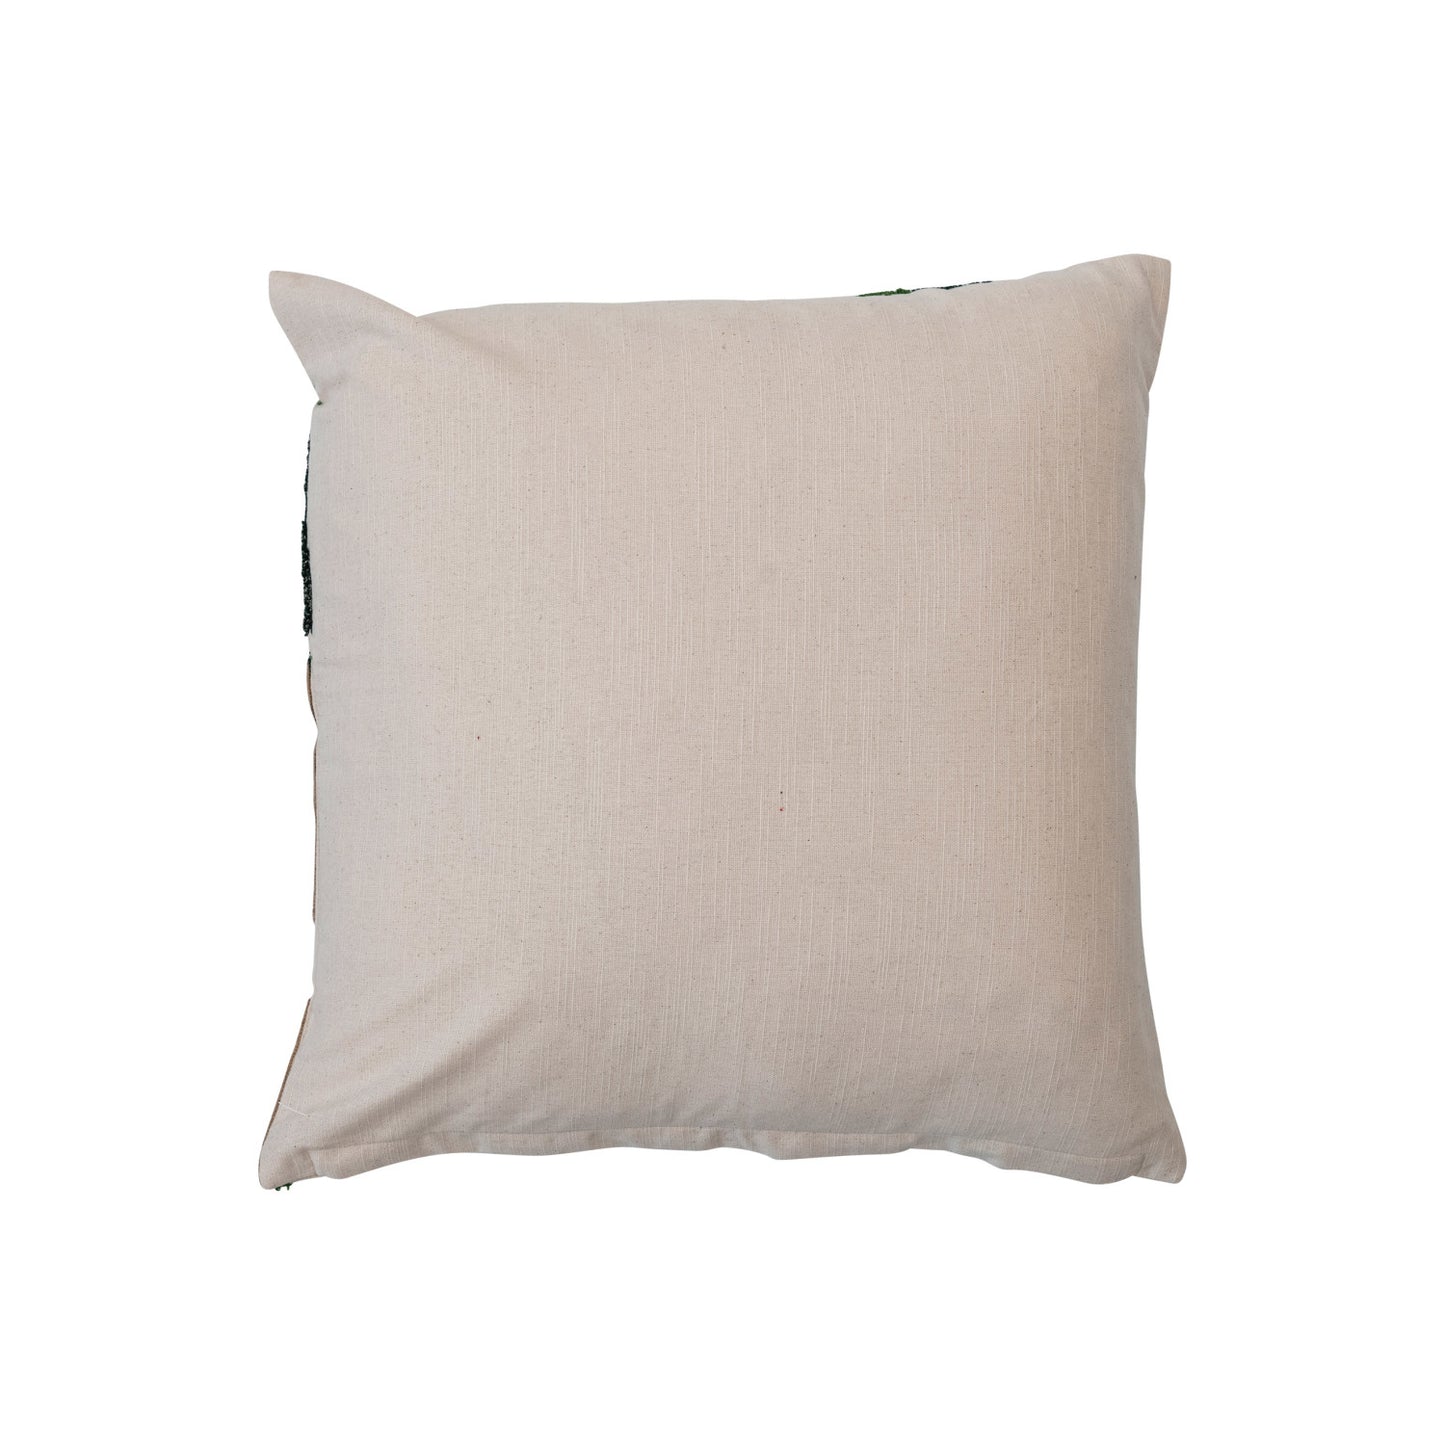 Square Cotton Slub Embroidered Pillow